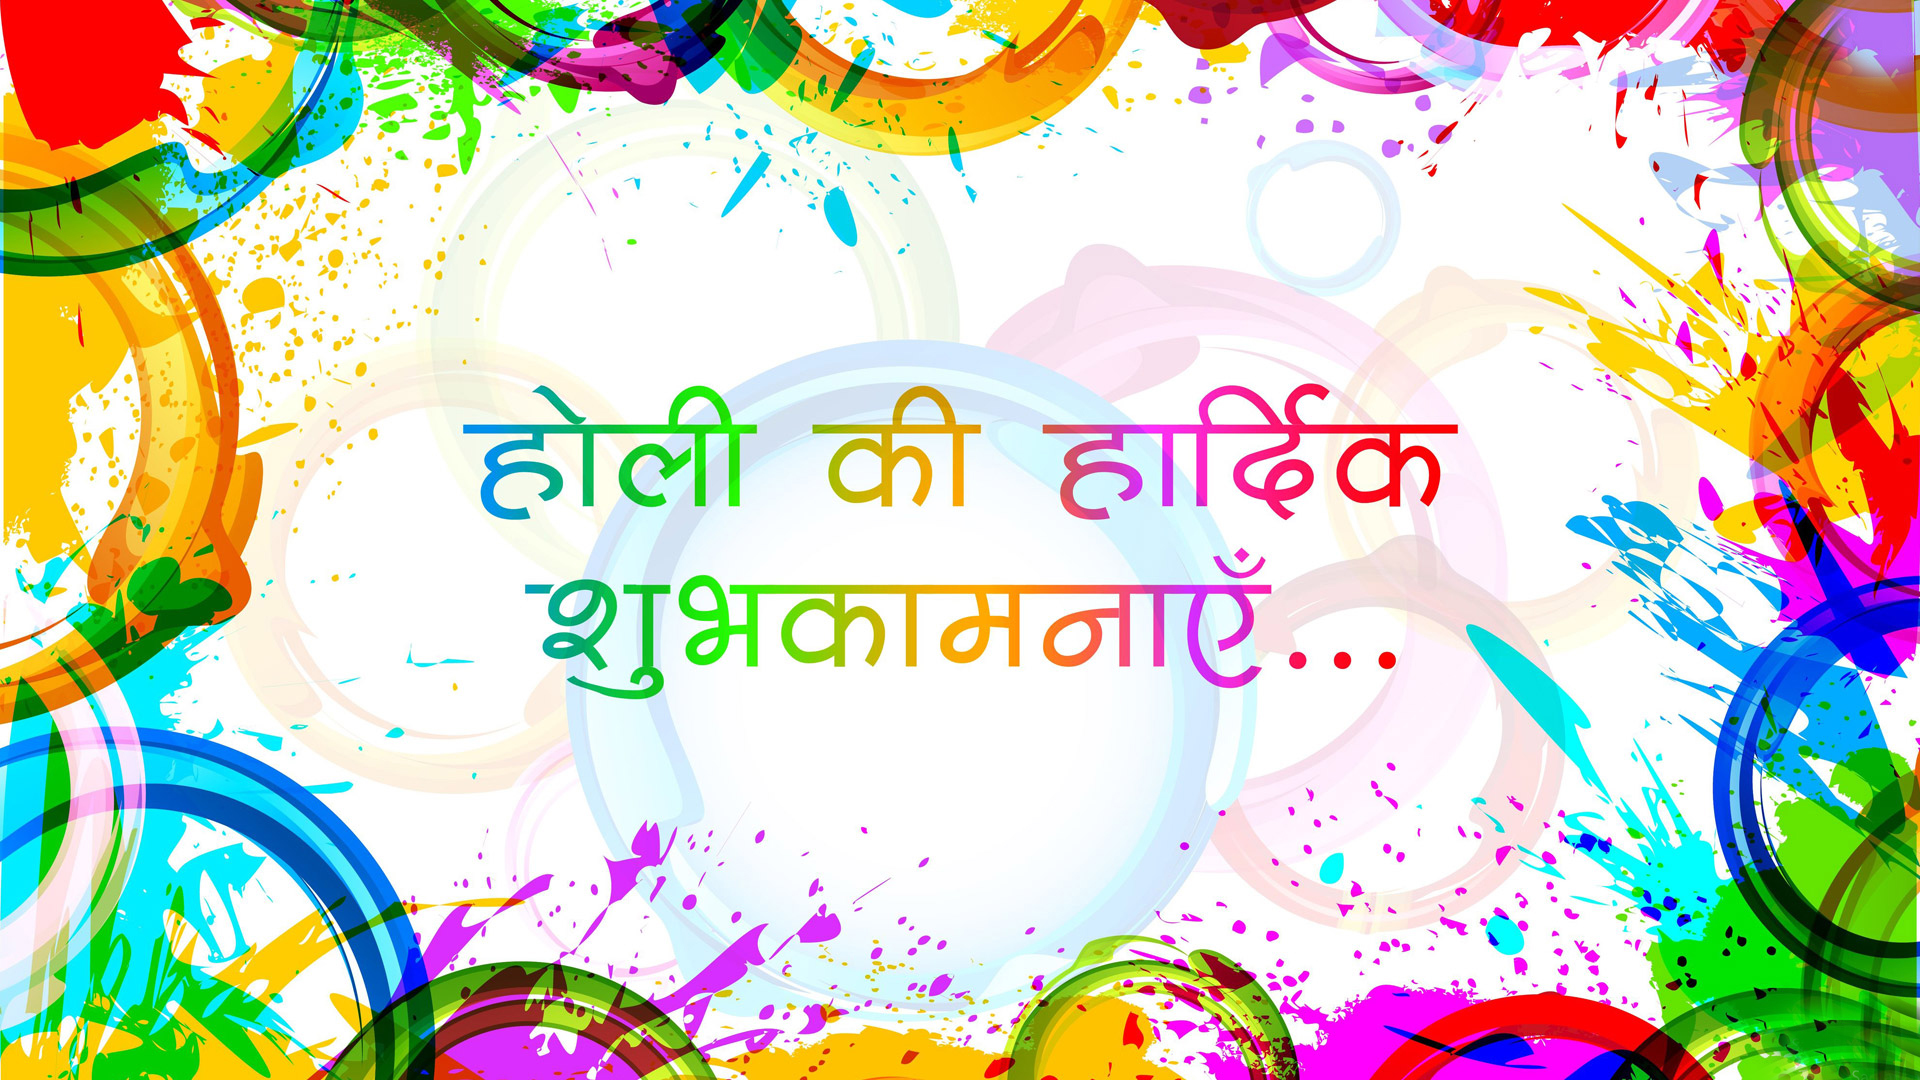 Holi Ki Shubhkamnaye Holi Wishes In Hindi Hd Wallpapers 1080p | Festivals